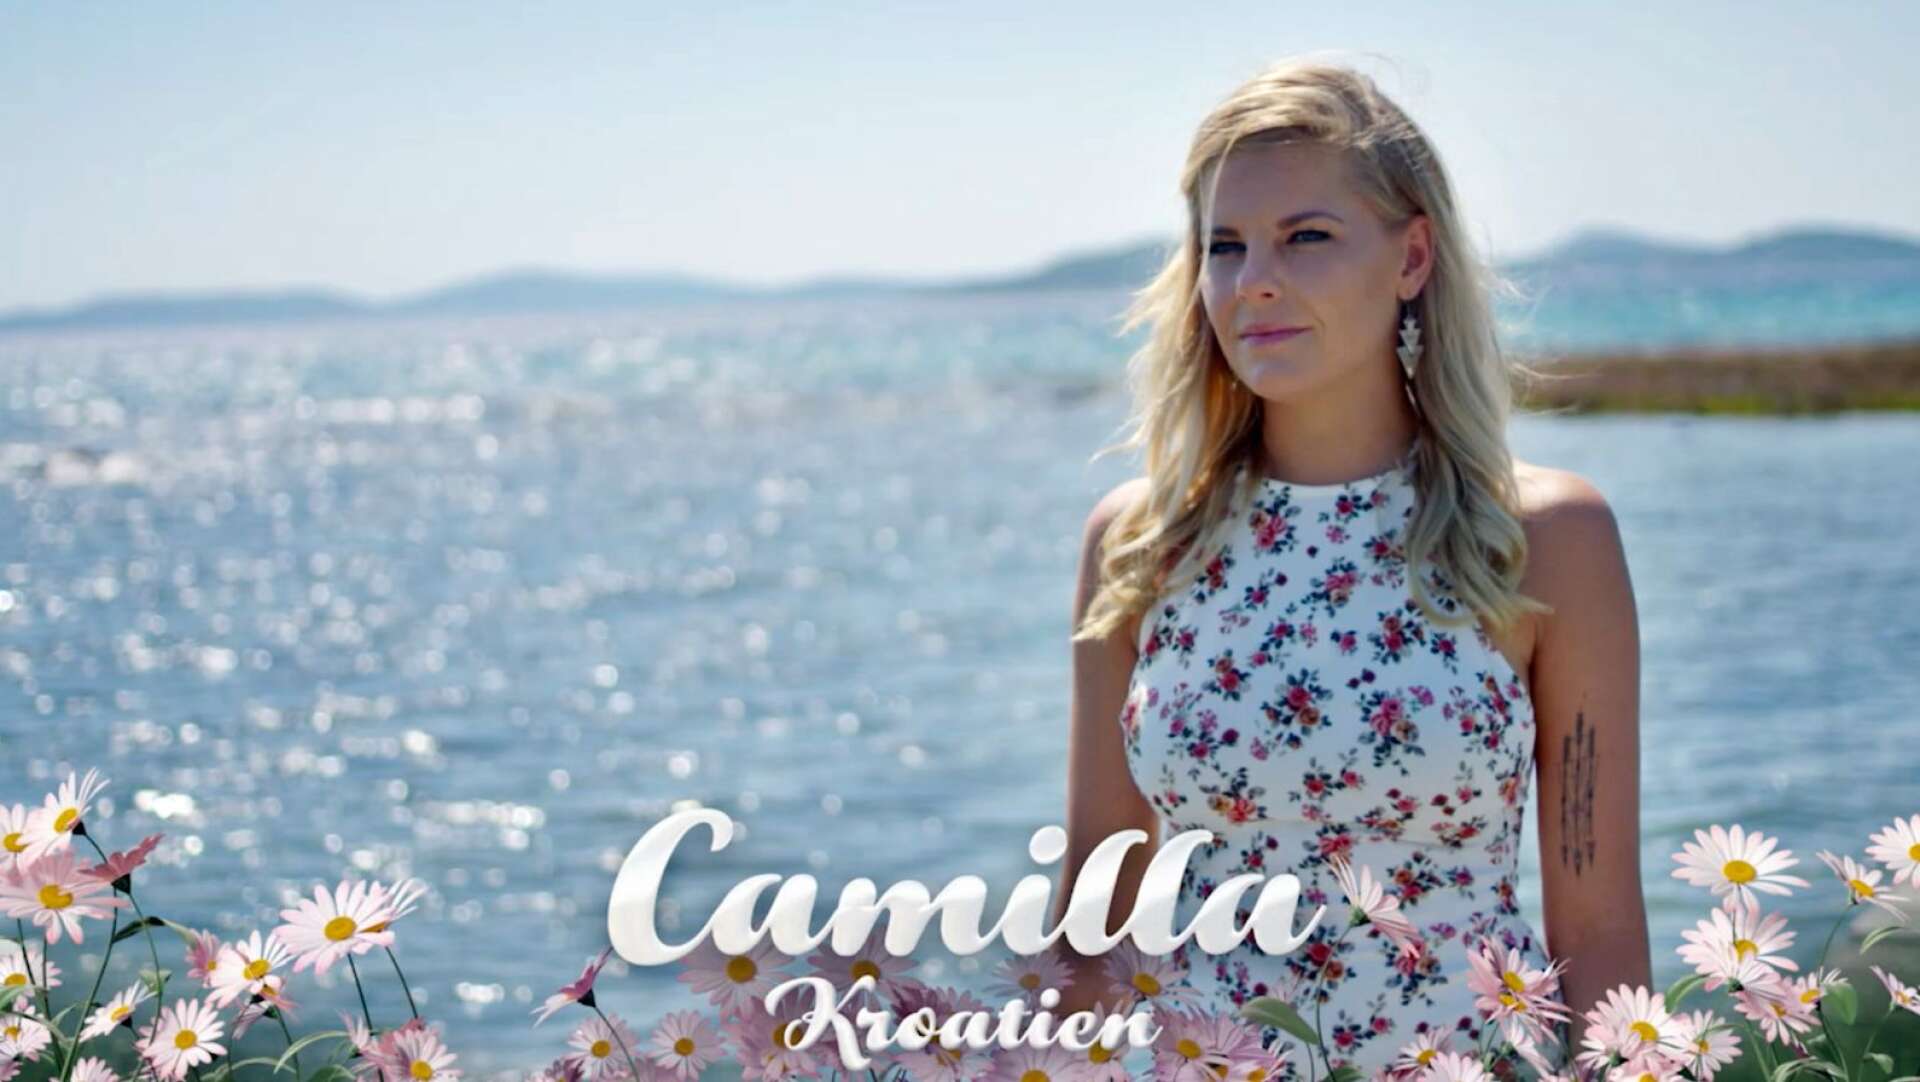 Camilla Backman gjorde det avgörande valet på en brygga i Kroatien. Foto: TV3